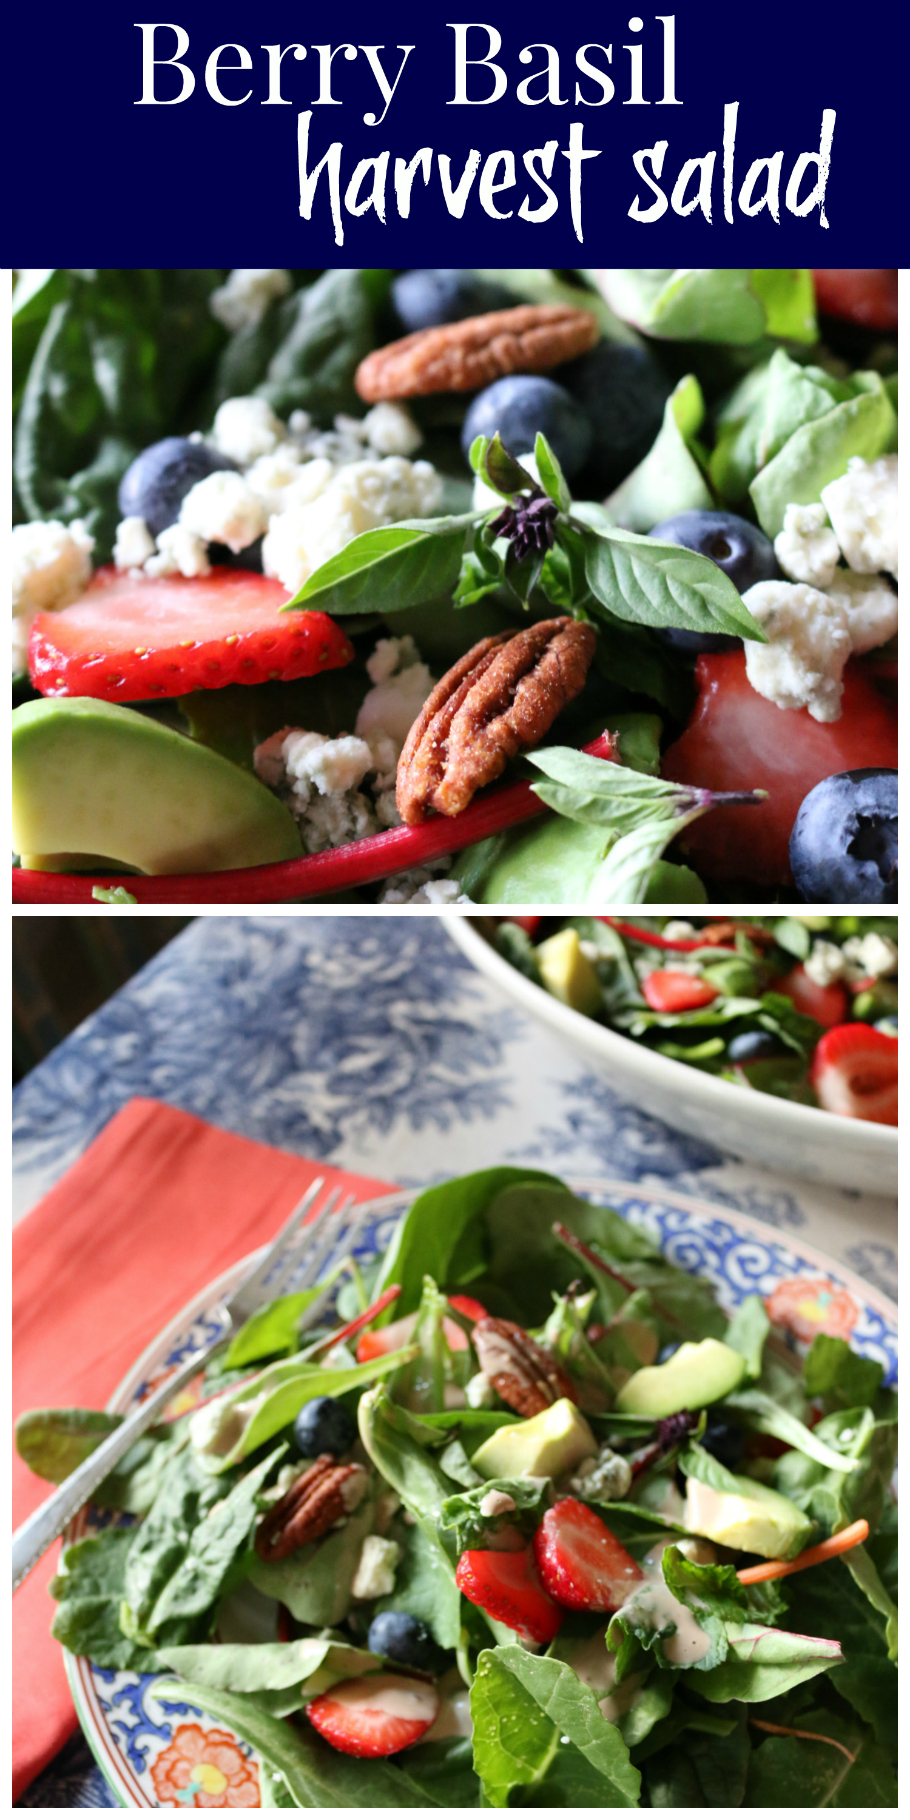 Berry Basil Harvest Salad | CeceliasGoodStuff.com | Good Food for Good People 